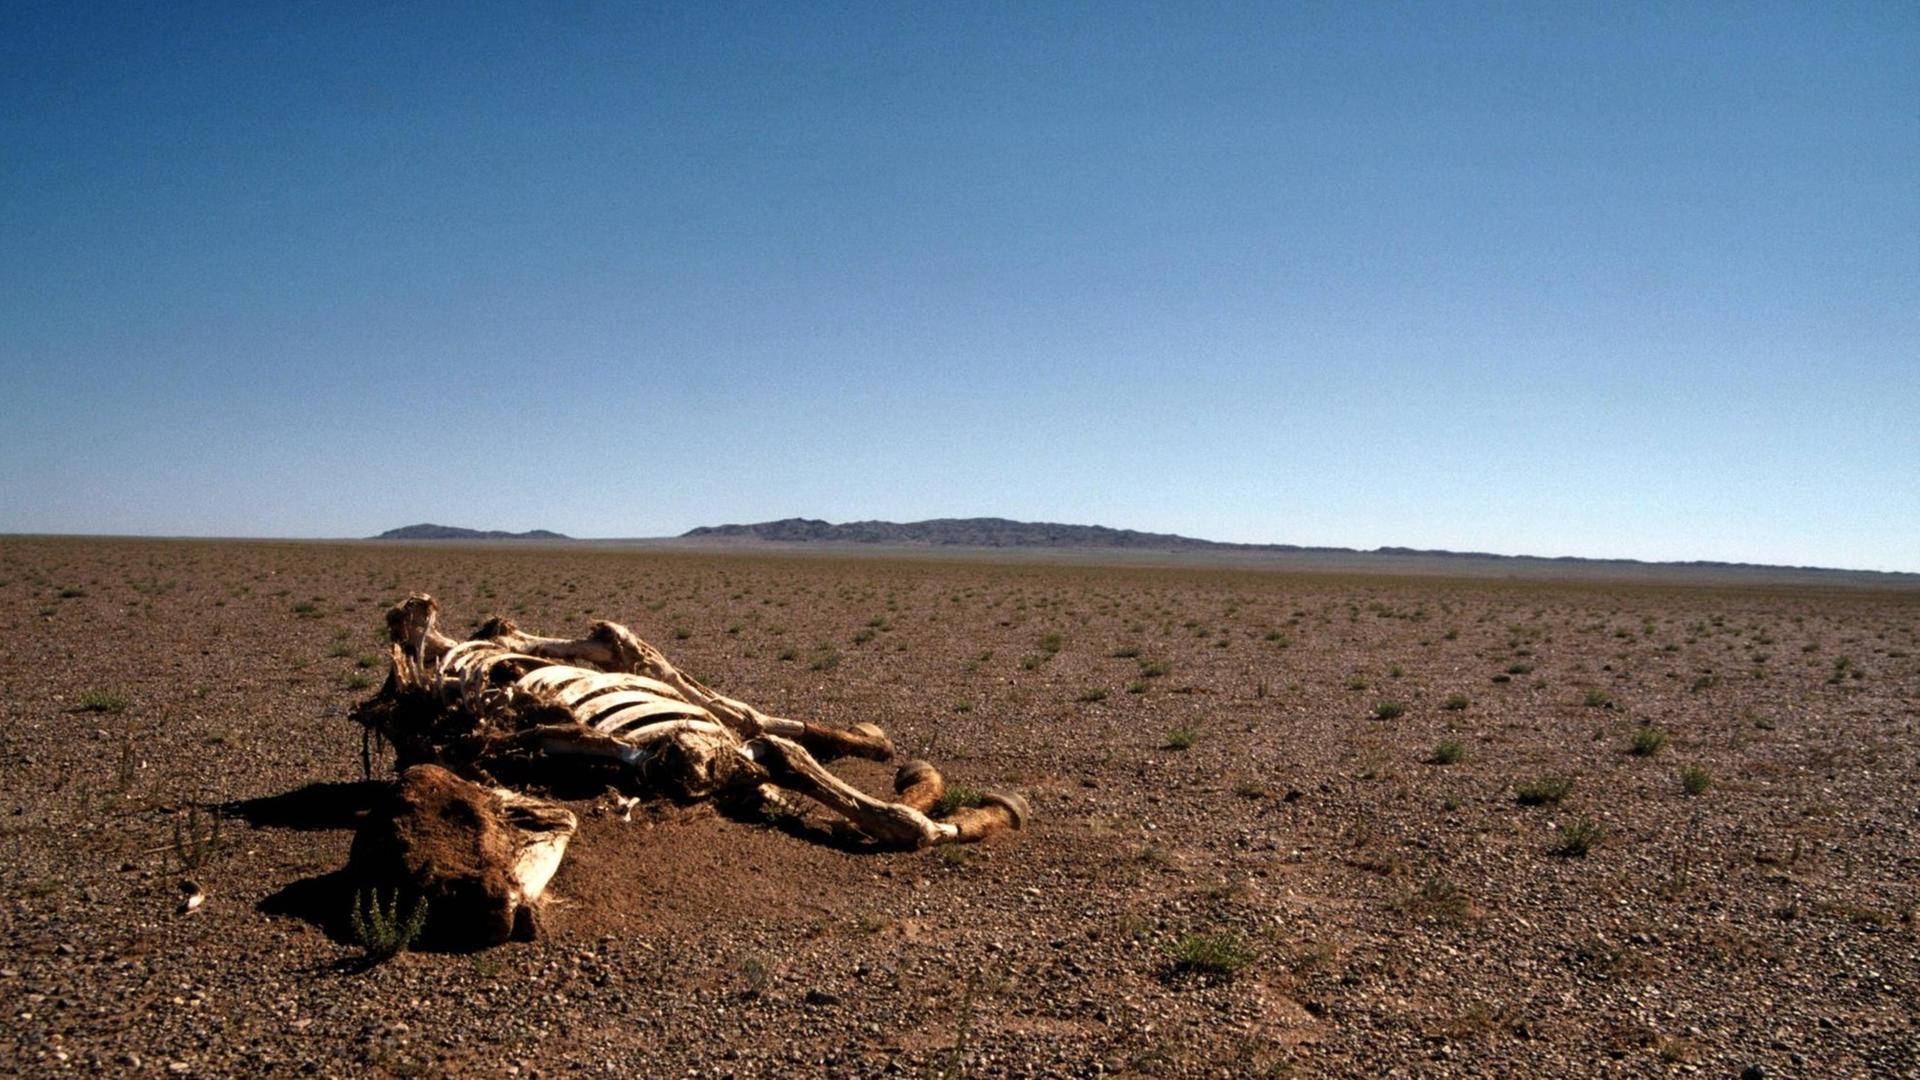 Thema Trockenheit und Dürre: Pferdeskelett in der Wüste Gobi